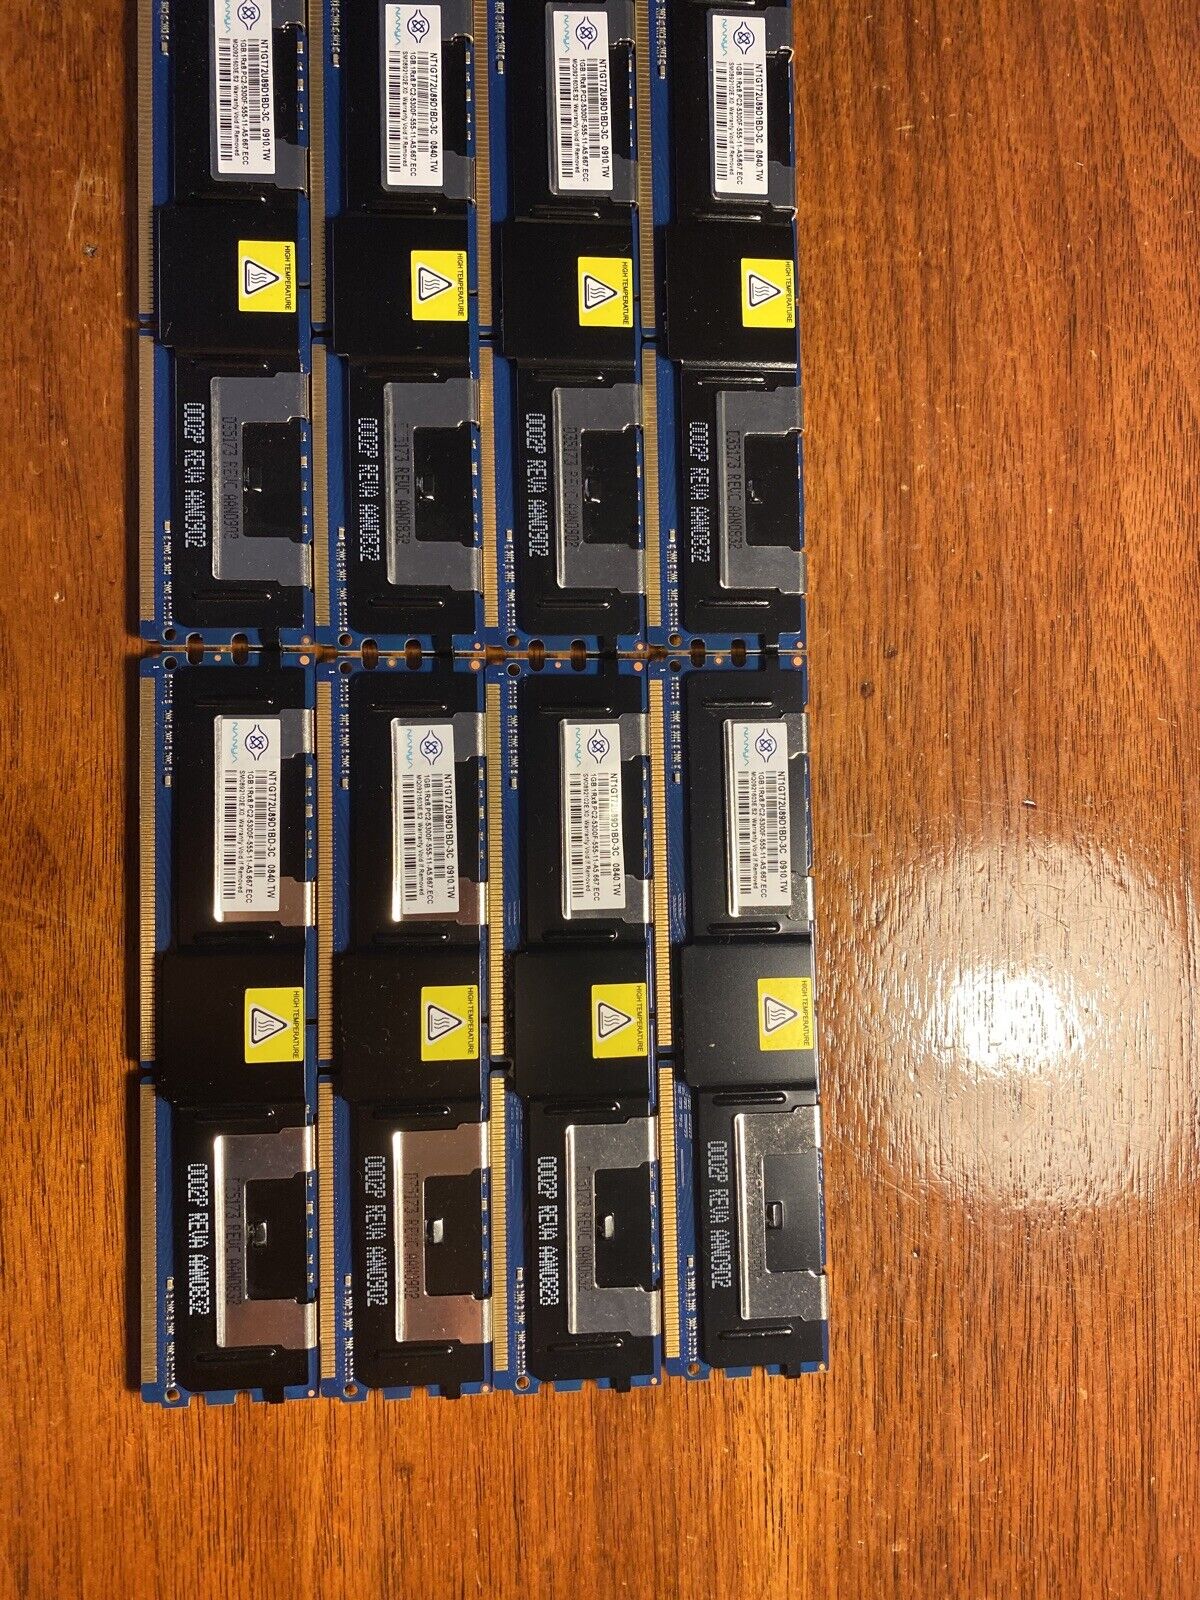 NANYA 1GB 1Rx8 PC2-5300F-555-11 MEMORY STICKS NT1GT72U89D1BD-3C